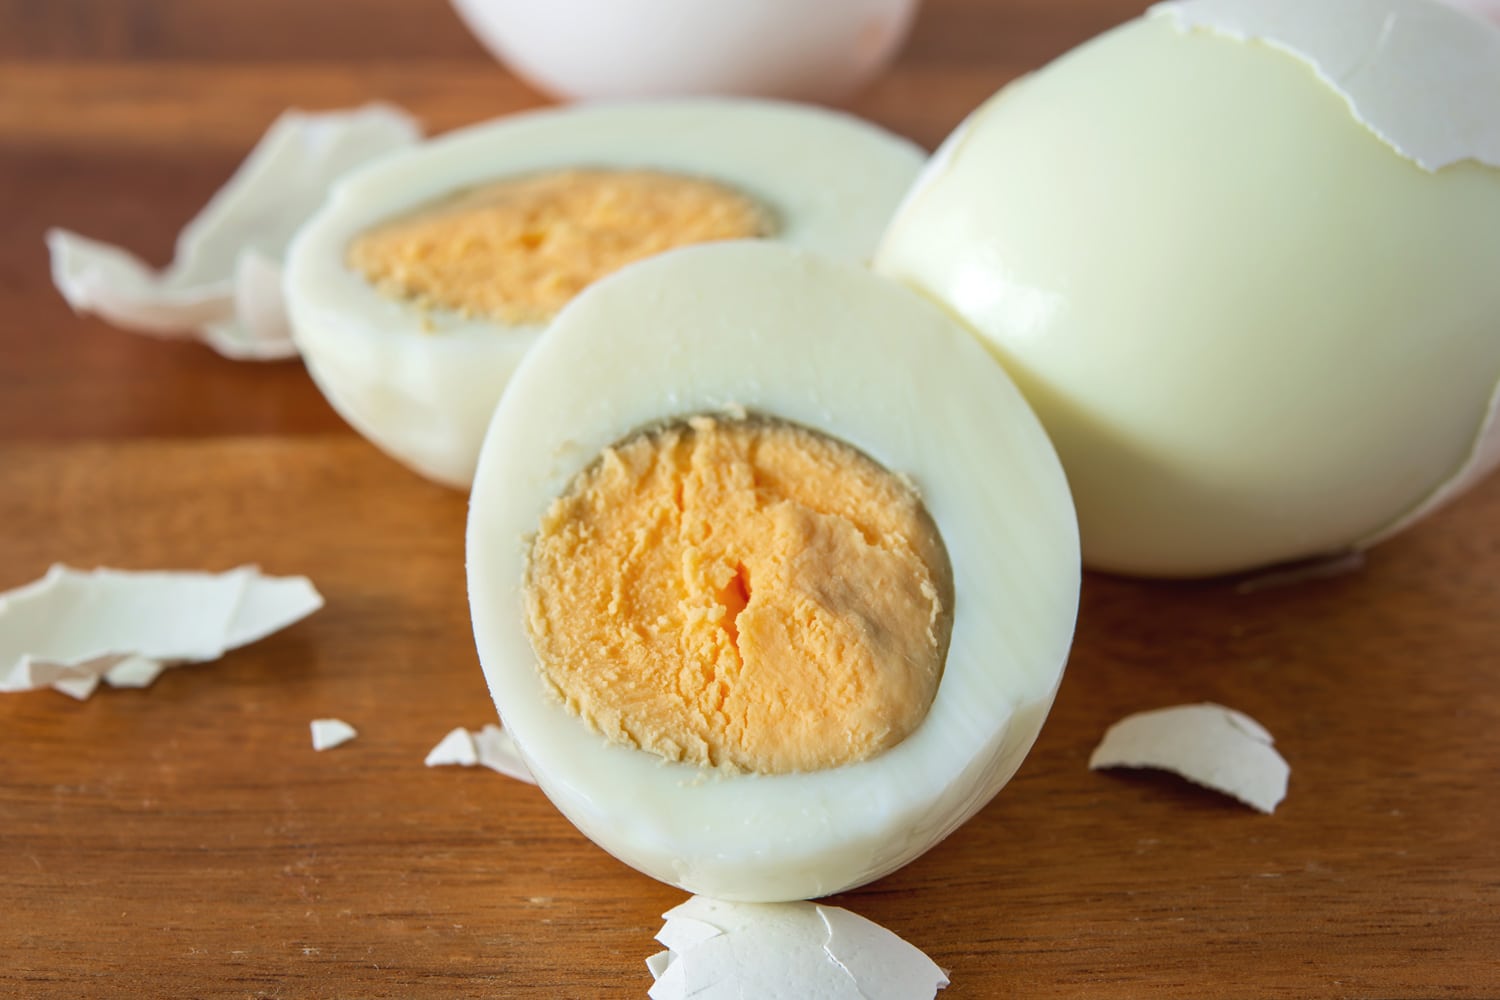 封闭半切过煮坏的鸡蛋在木盘上。黄蛋周围的绿色说明煮得太久了。水煮蛋是高蛋白的健康零食。